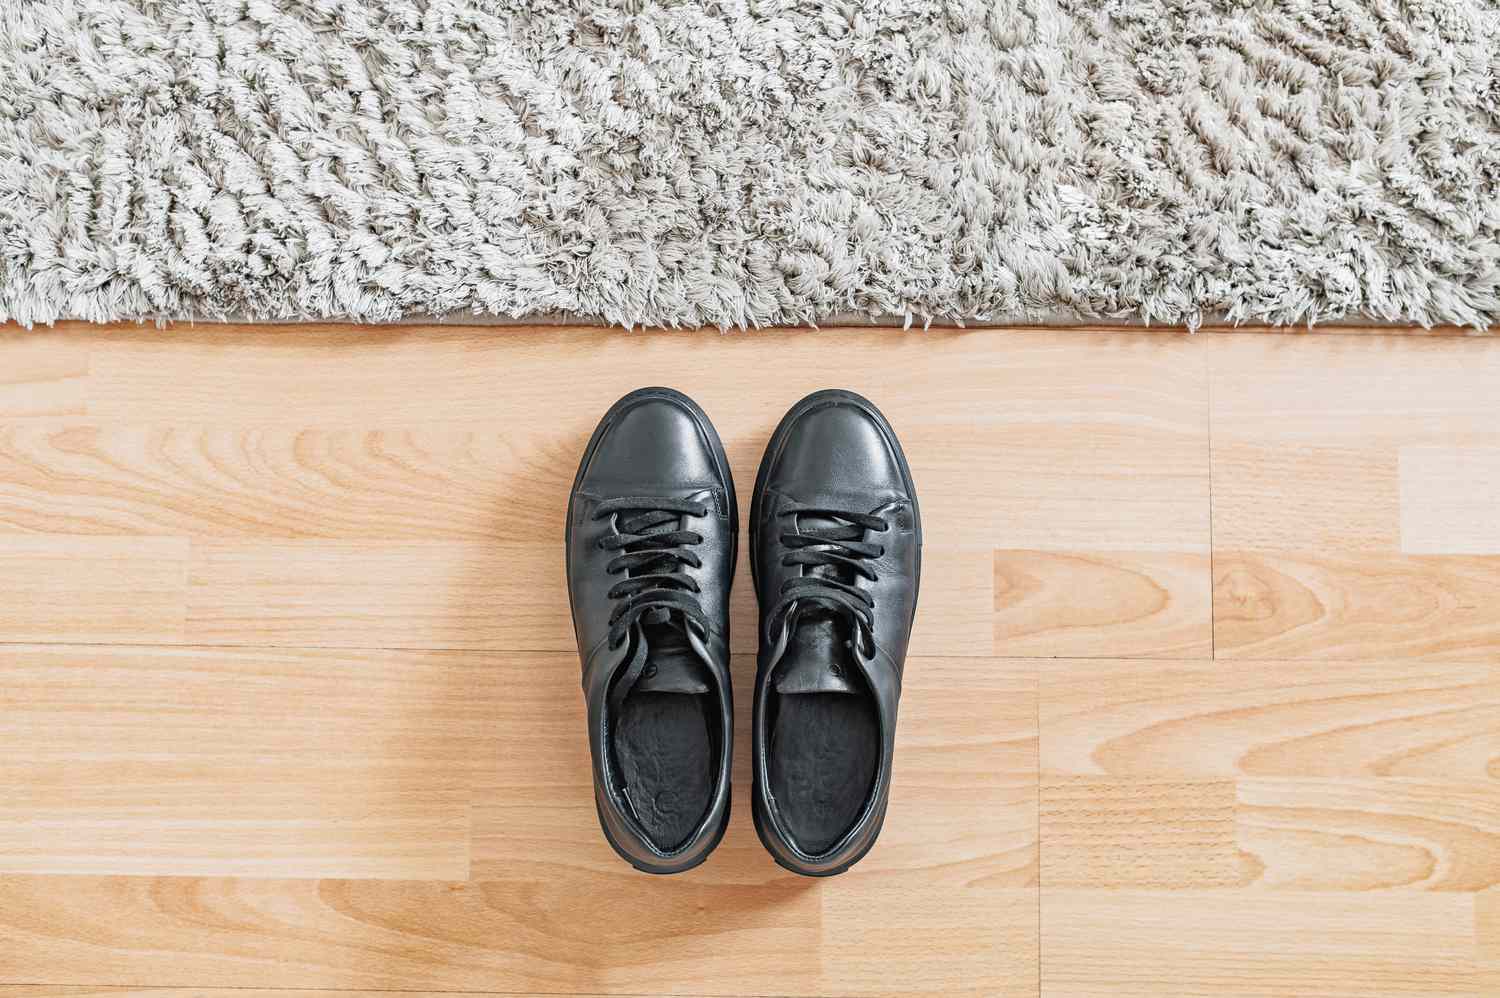 Schwarze Schuhe neben flauschigem Teppich auf Holzboden